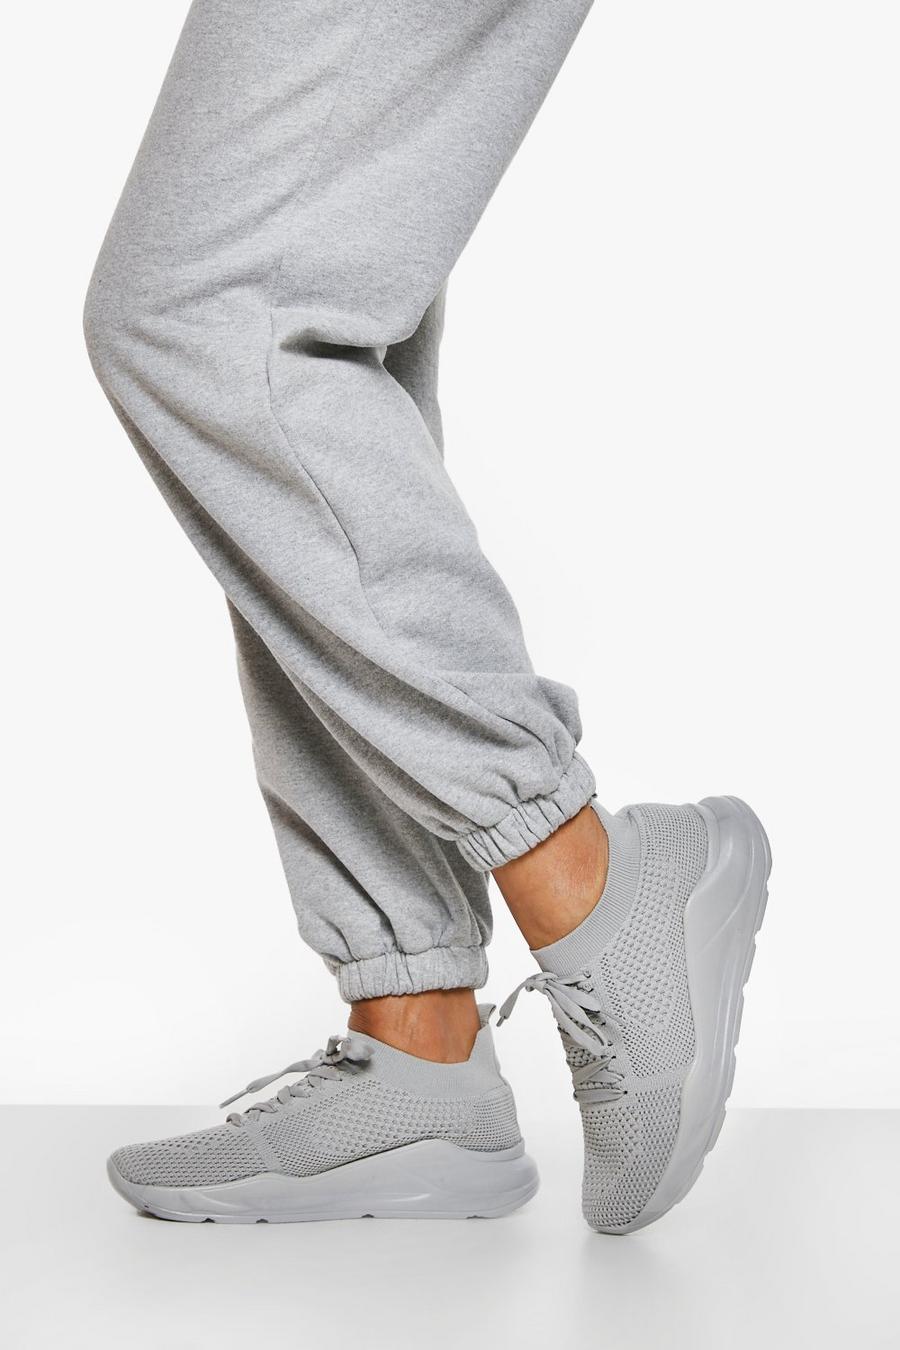 Zapatillas deportivas gruesas estilo calcetín de tela con cordones cruzados, Grey gris